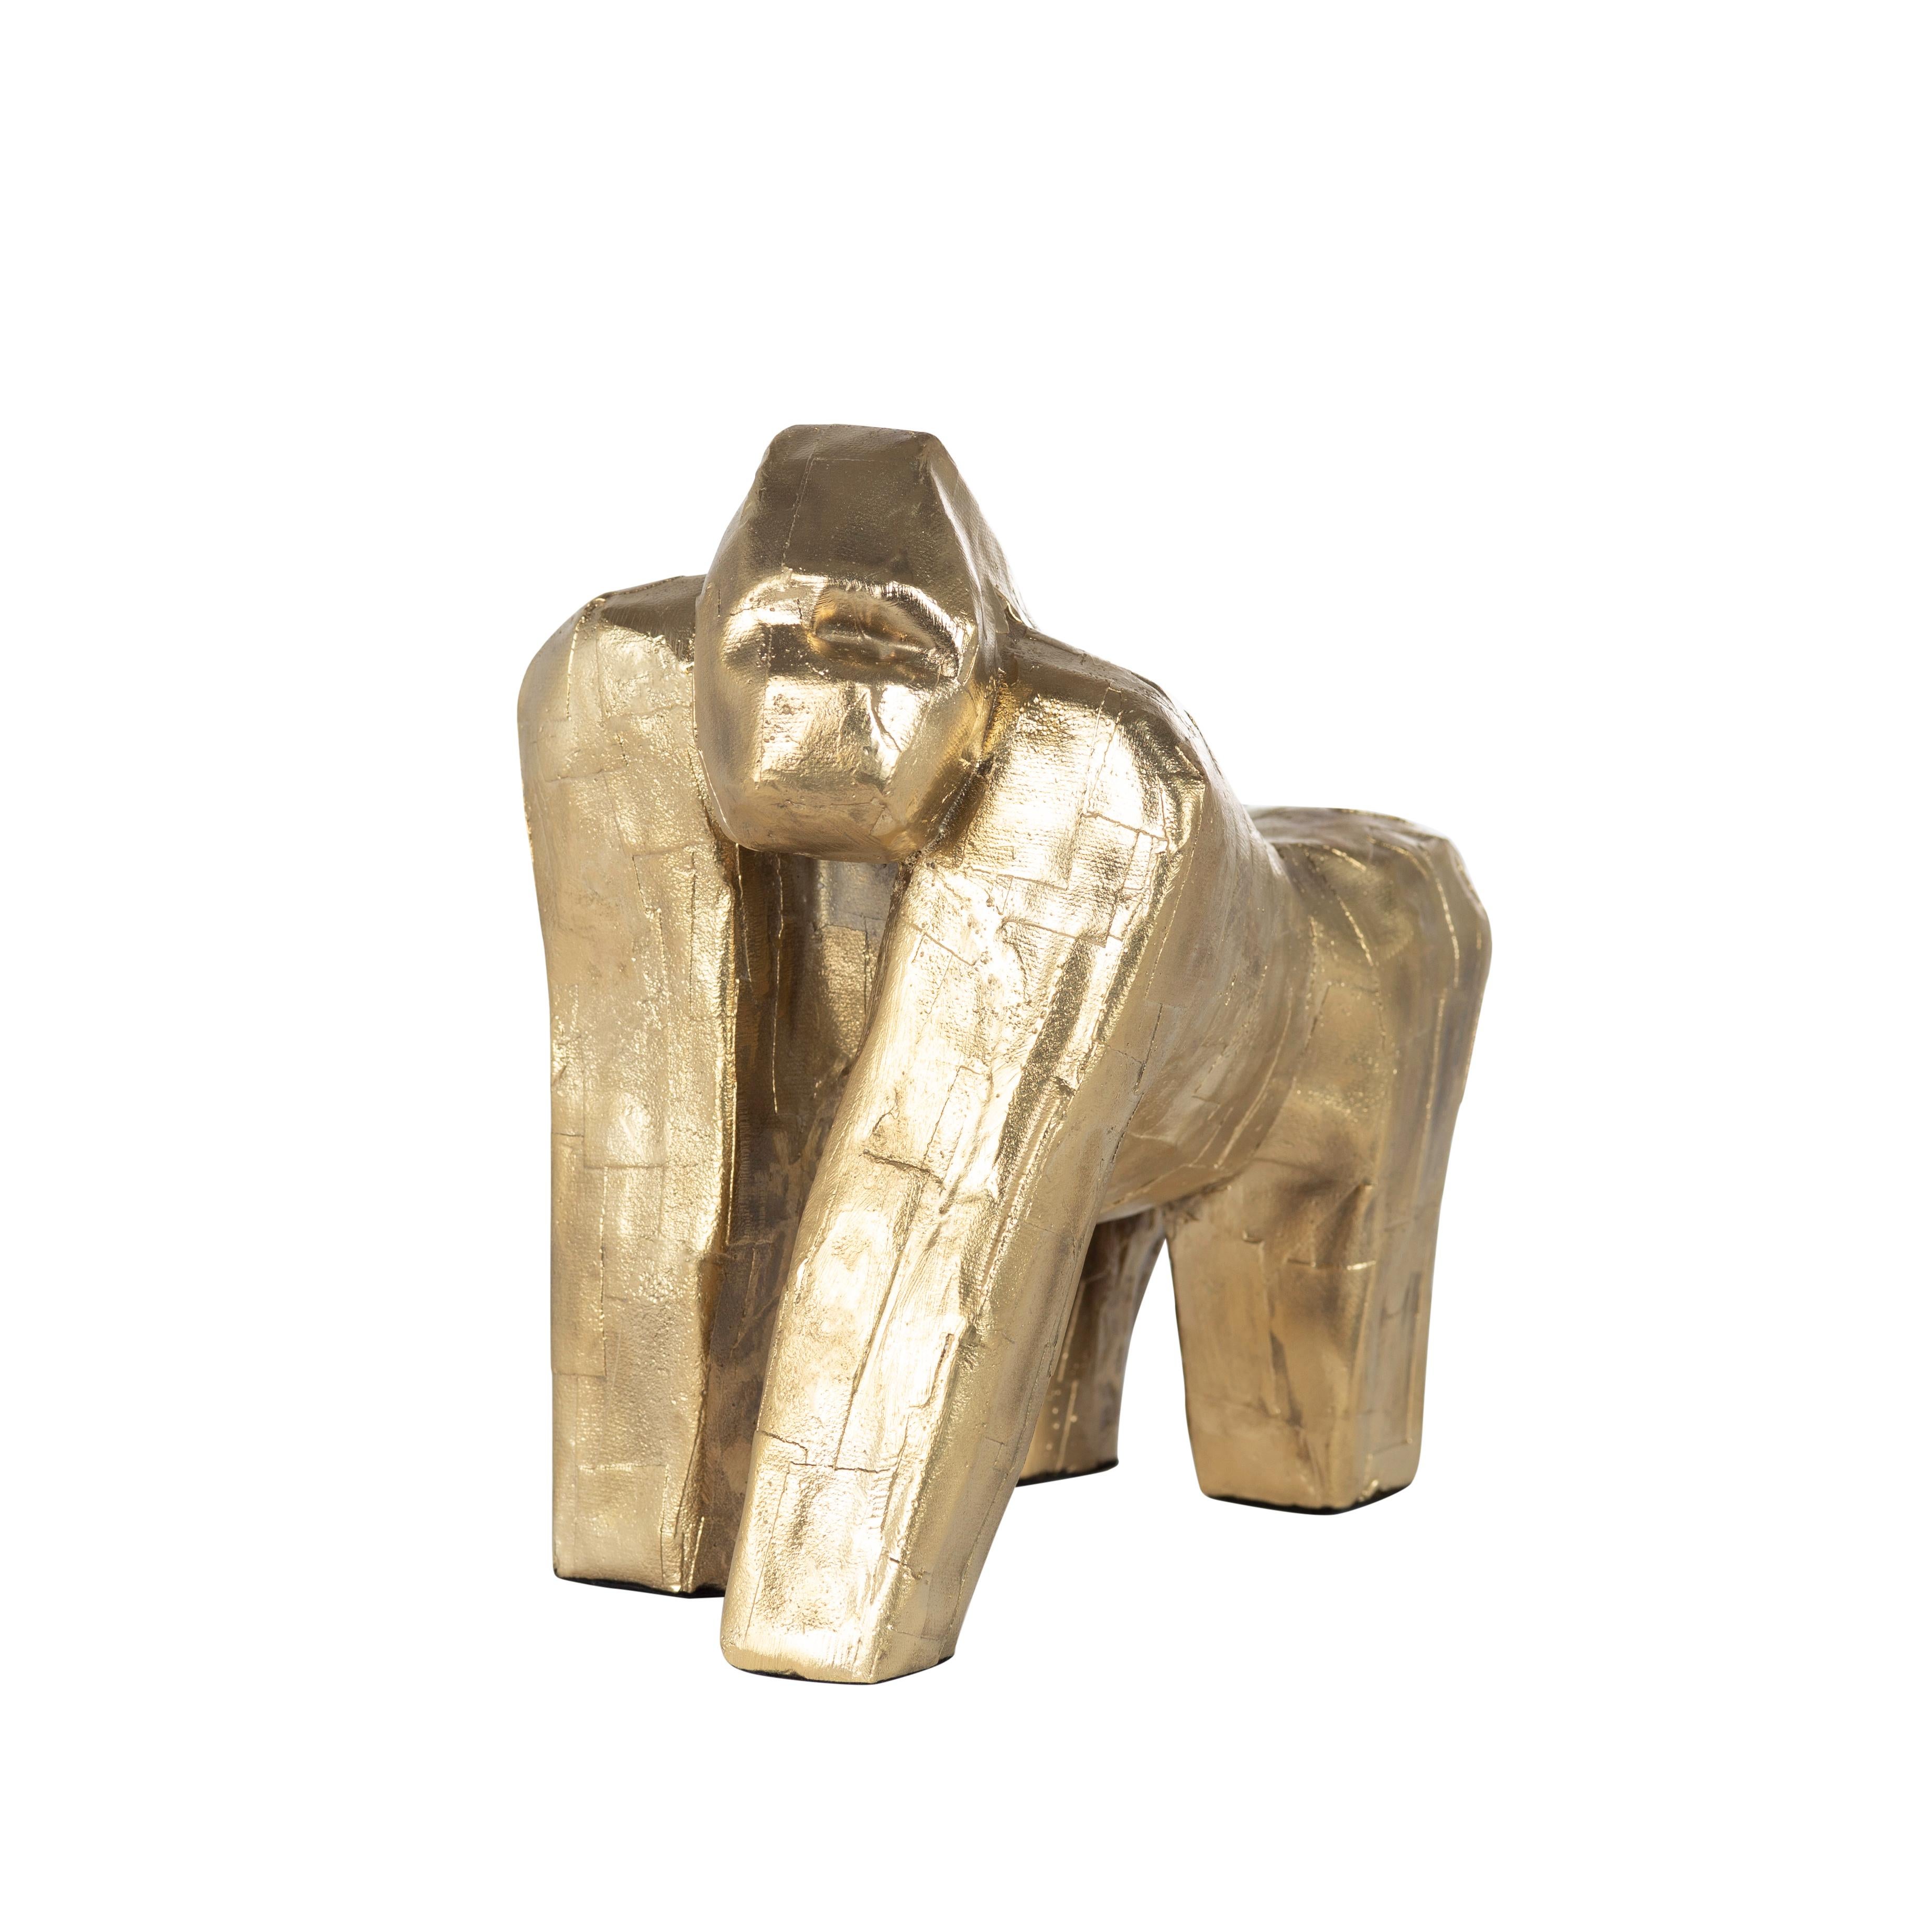 Sculpture de gorille par Pulpo
Dimensions : D20 x L15 x H21 cm
Matériaux : bronze

Un crash, une tour, un troupeau. Quel que soit le nom que l'on donne à ce groupe, il est tout simplement à sa place. Stimulé par des explorations dans la nature et